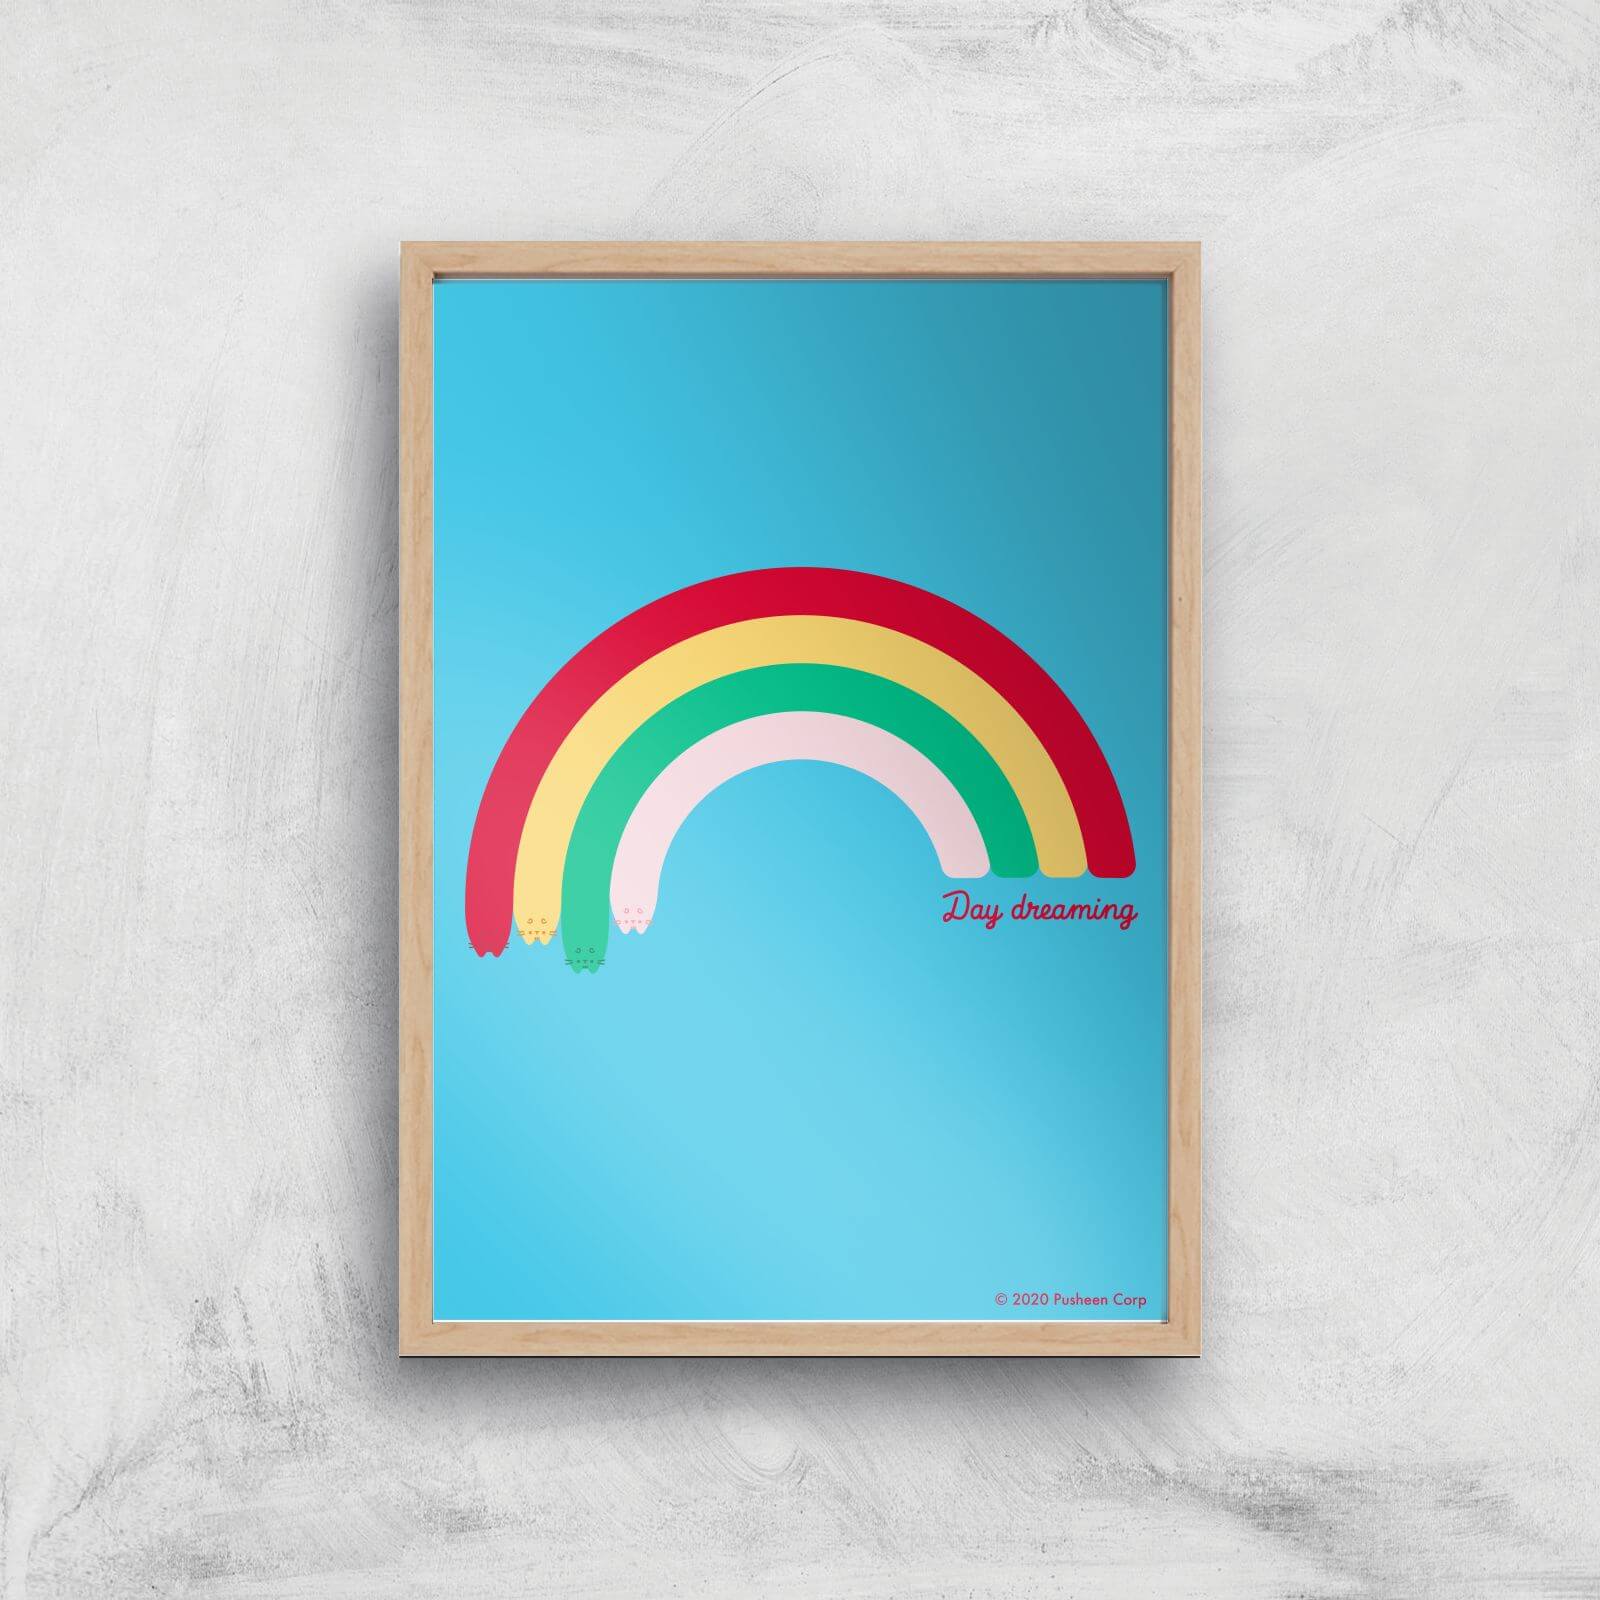 Pusheen Large Rainbow Giclee Art Print - A3 - Wooden Frame